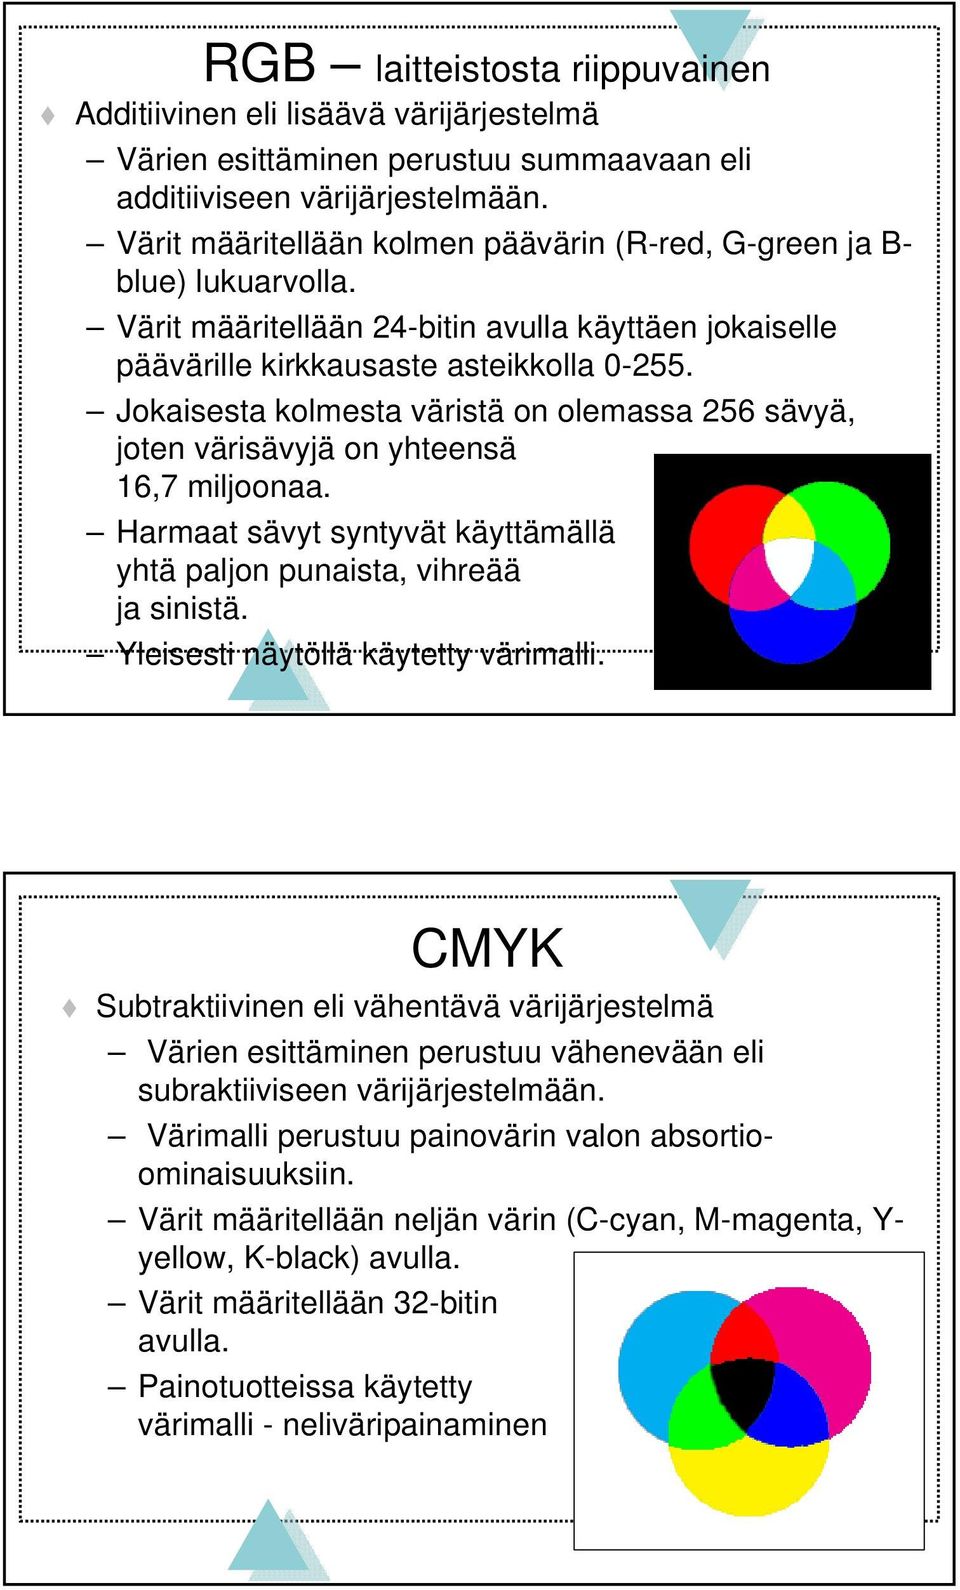 Jokaisesta kolmesta väristä on olemassa 256 sävyä, joten värisävyjä on yhteensä 16,7 miljoonaa. Harmaat sävyt syntyvät käyttämällä yhtä paljon punaista, vihreää ja sinistä.